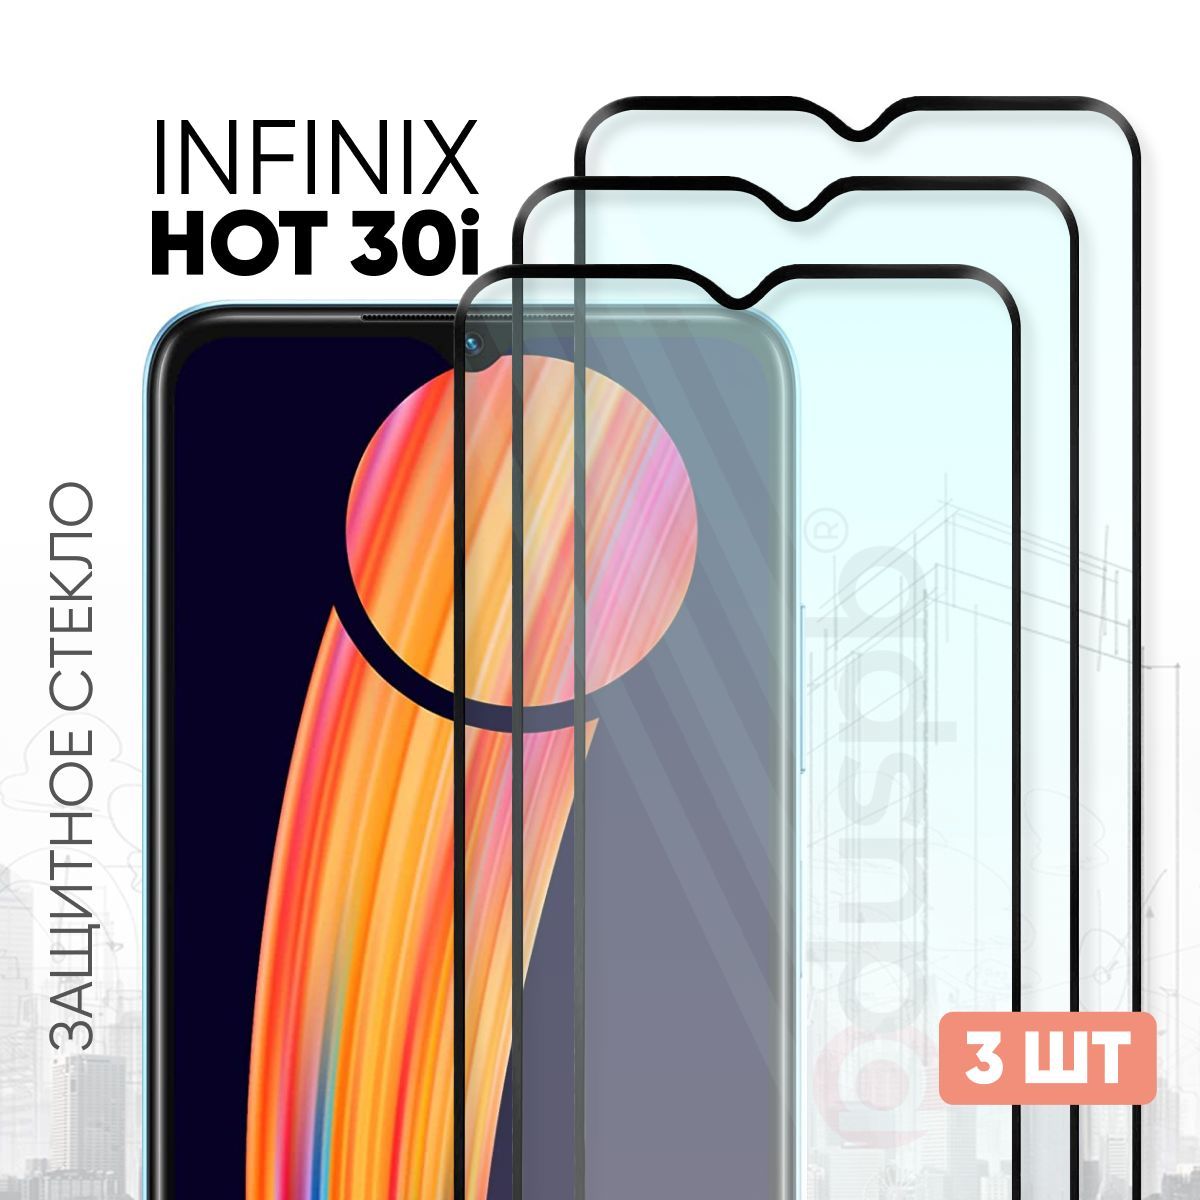 Экран на infinix hot 30. Защитное стекло на стекло на Infinix hot 30i. Инфиникс хот 30i. Infinix hot 30i. Инфиникс хот 30 ай.